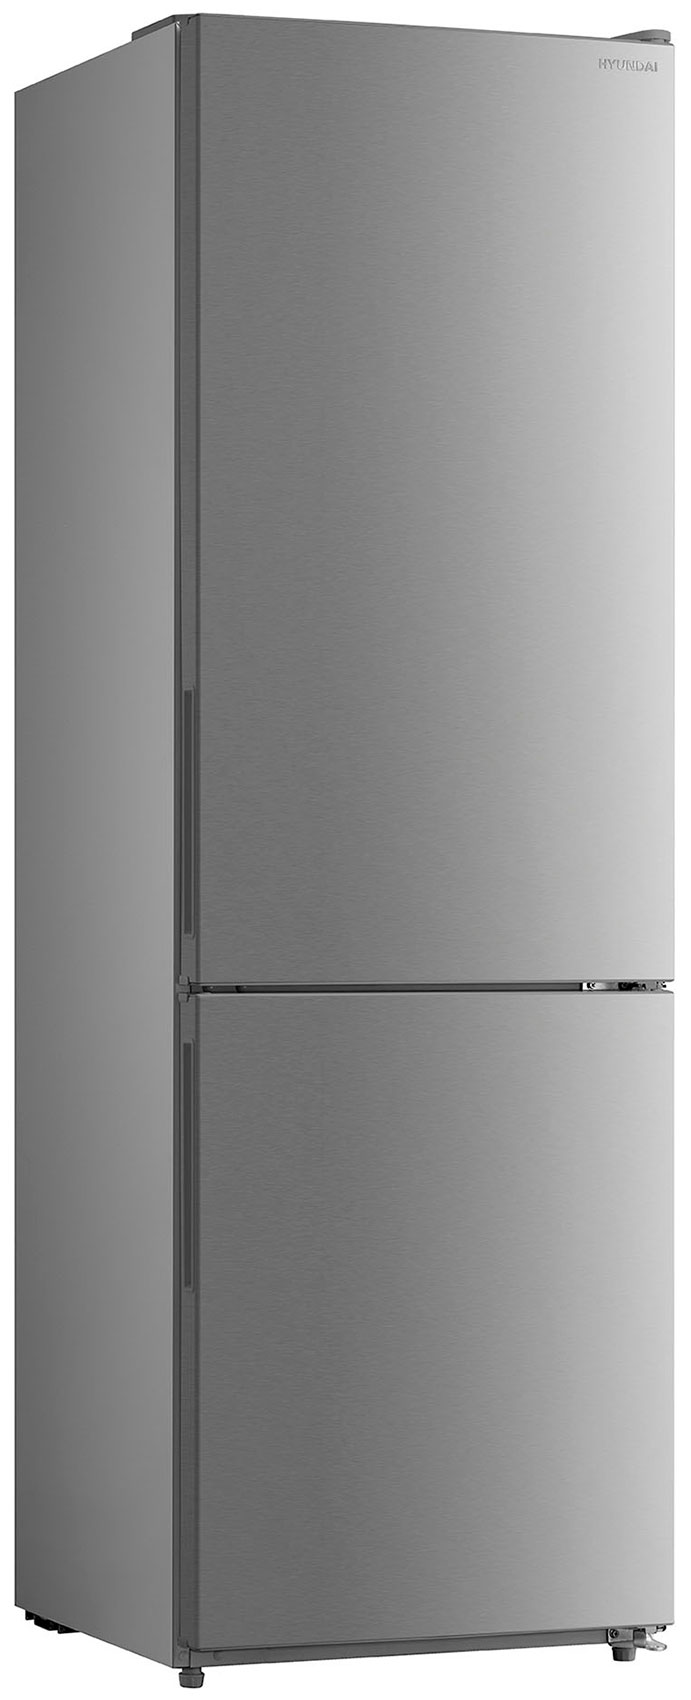 Двухкамерный холодильник Hyundai CC3093FIX нержавеющая сталь холодильник hyundai ct5045fix нержавеющая сталь двухкамерный